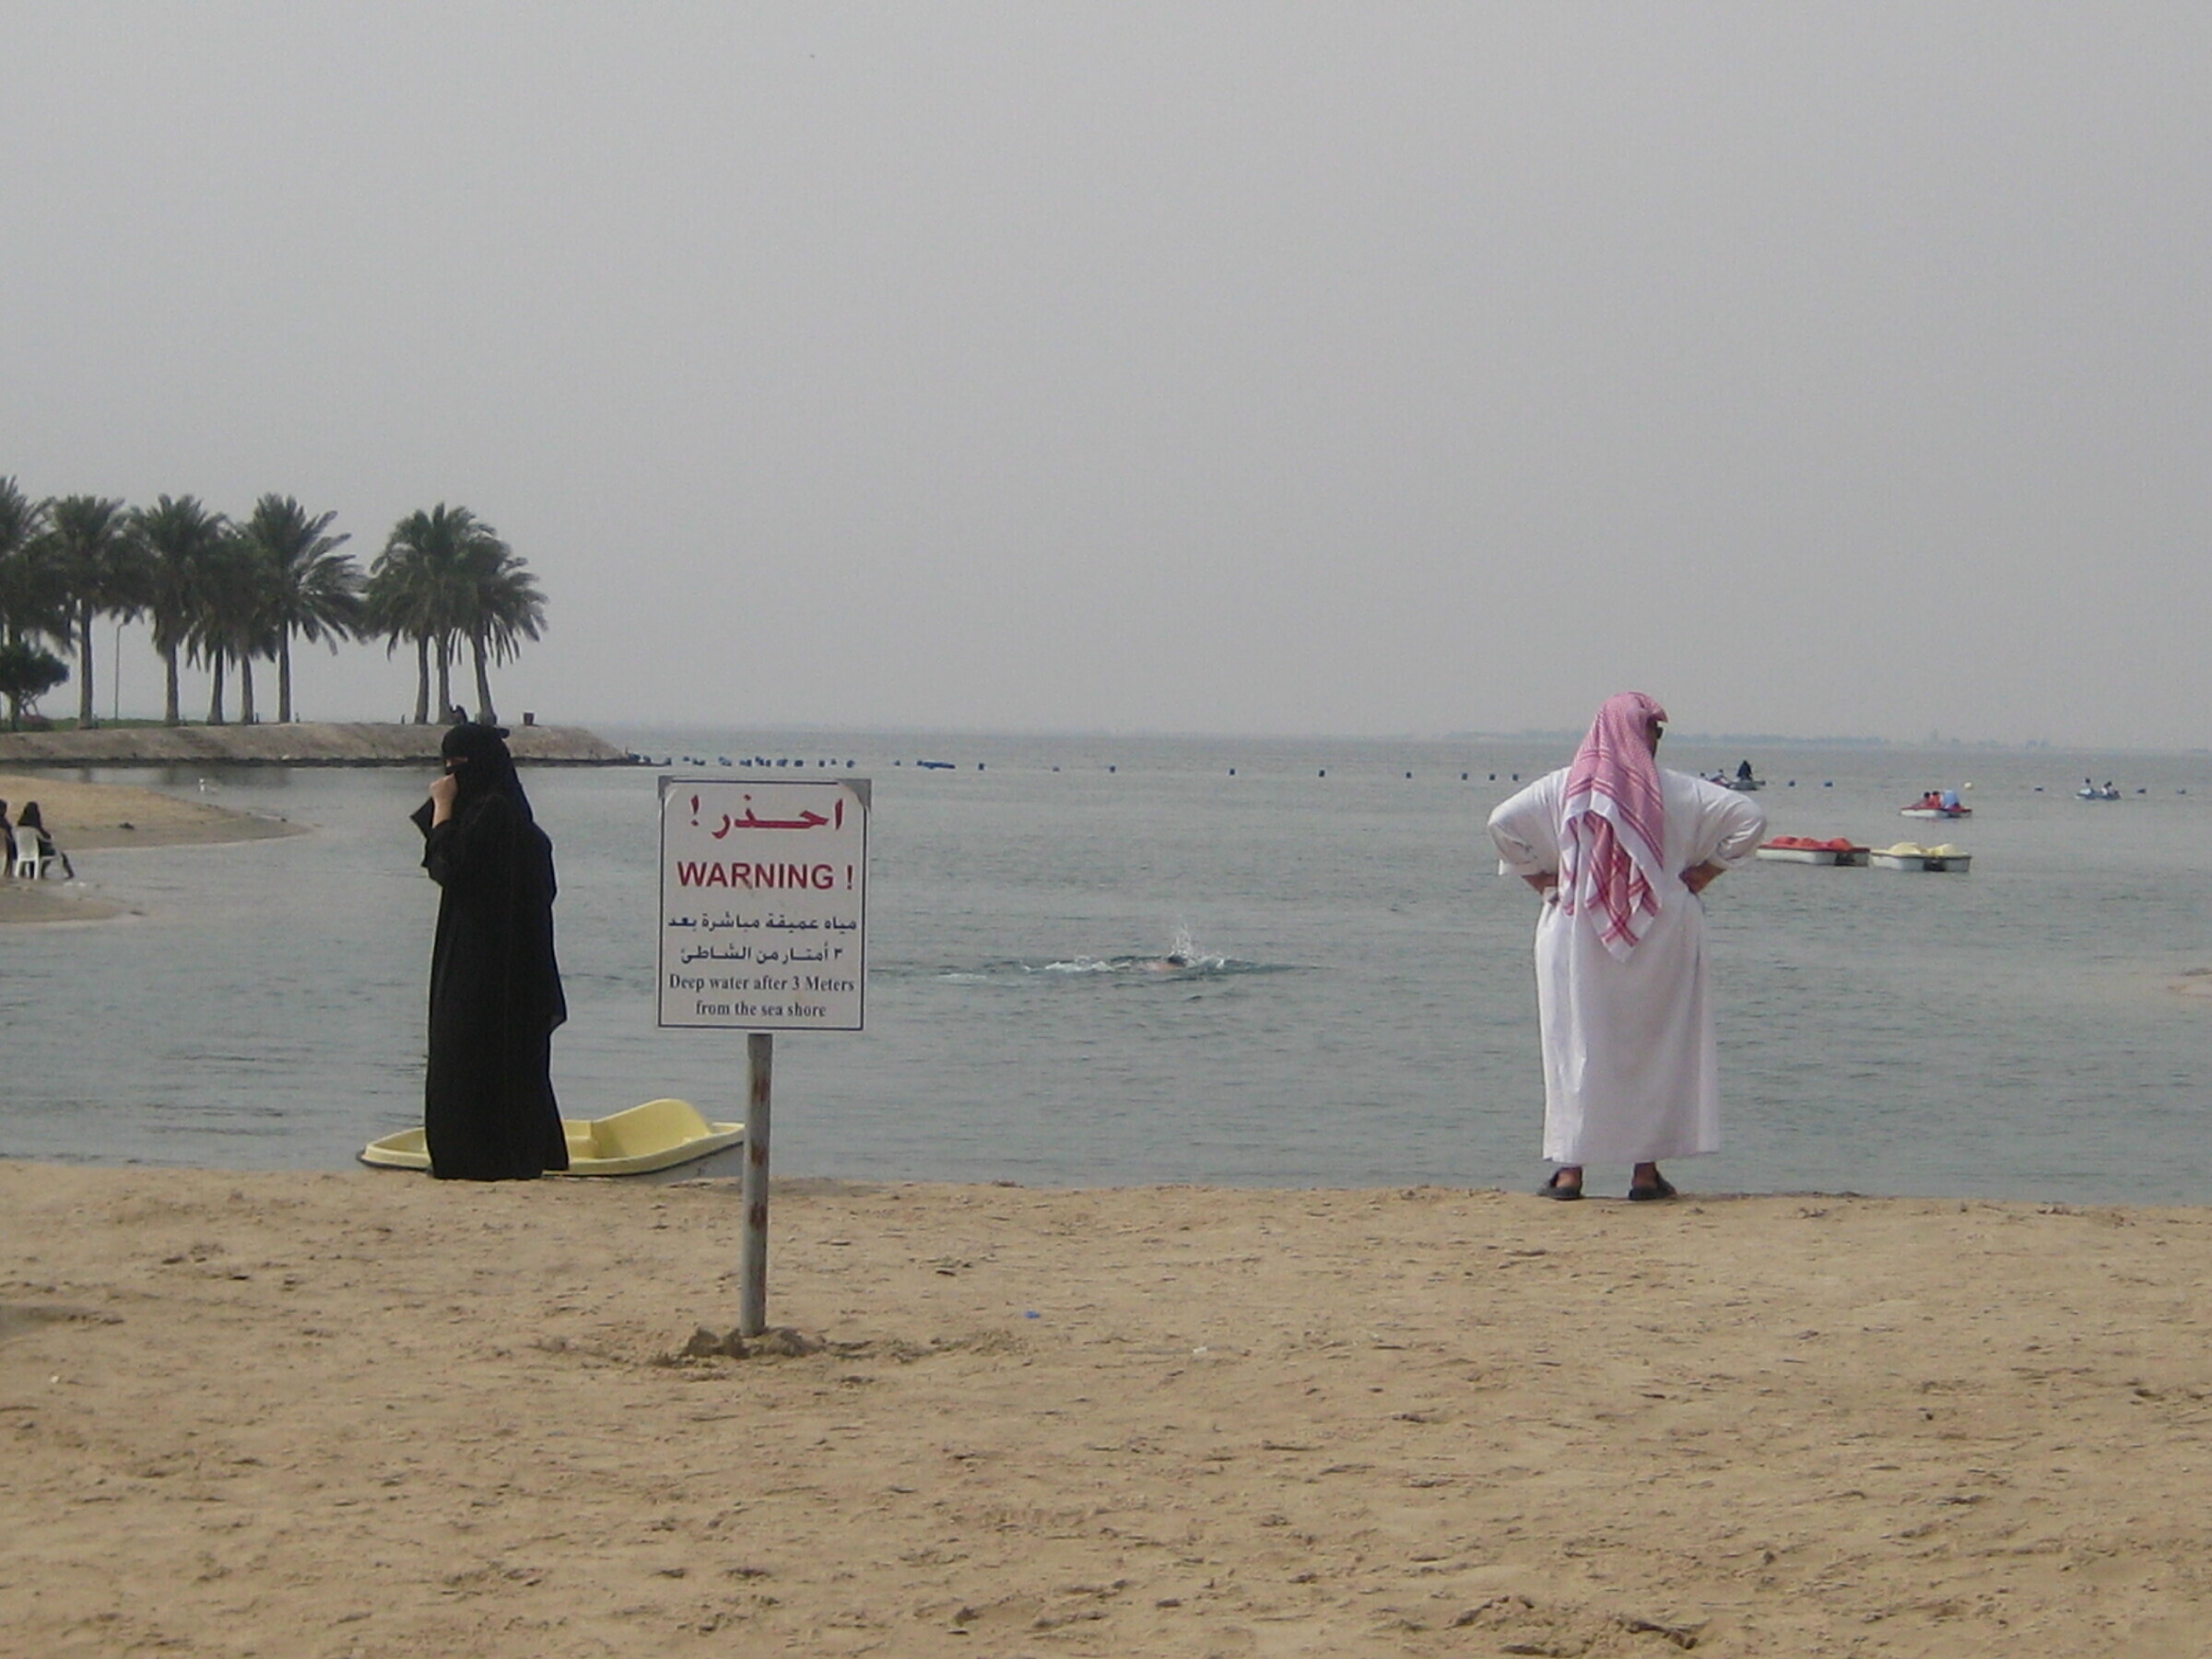 Саудовская аравия курорты. Курорты Саудовской Аравии на Красном море. The Red Sea курорт Саудовской Аравии. Пляжи Саудовской Аравии на Красном море. Джидда Саудовская Аравия пляжи.